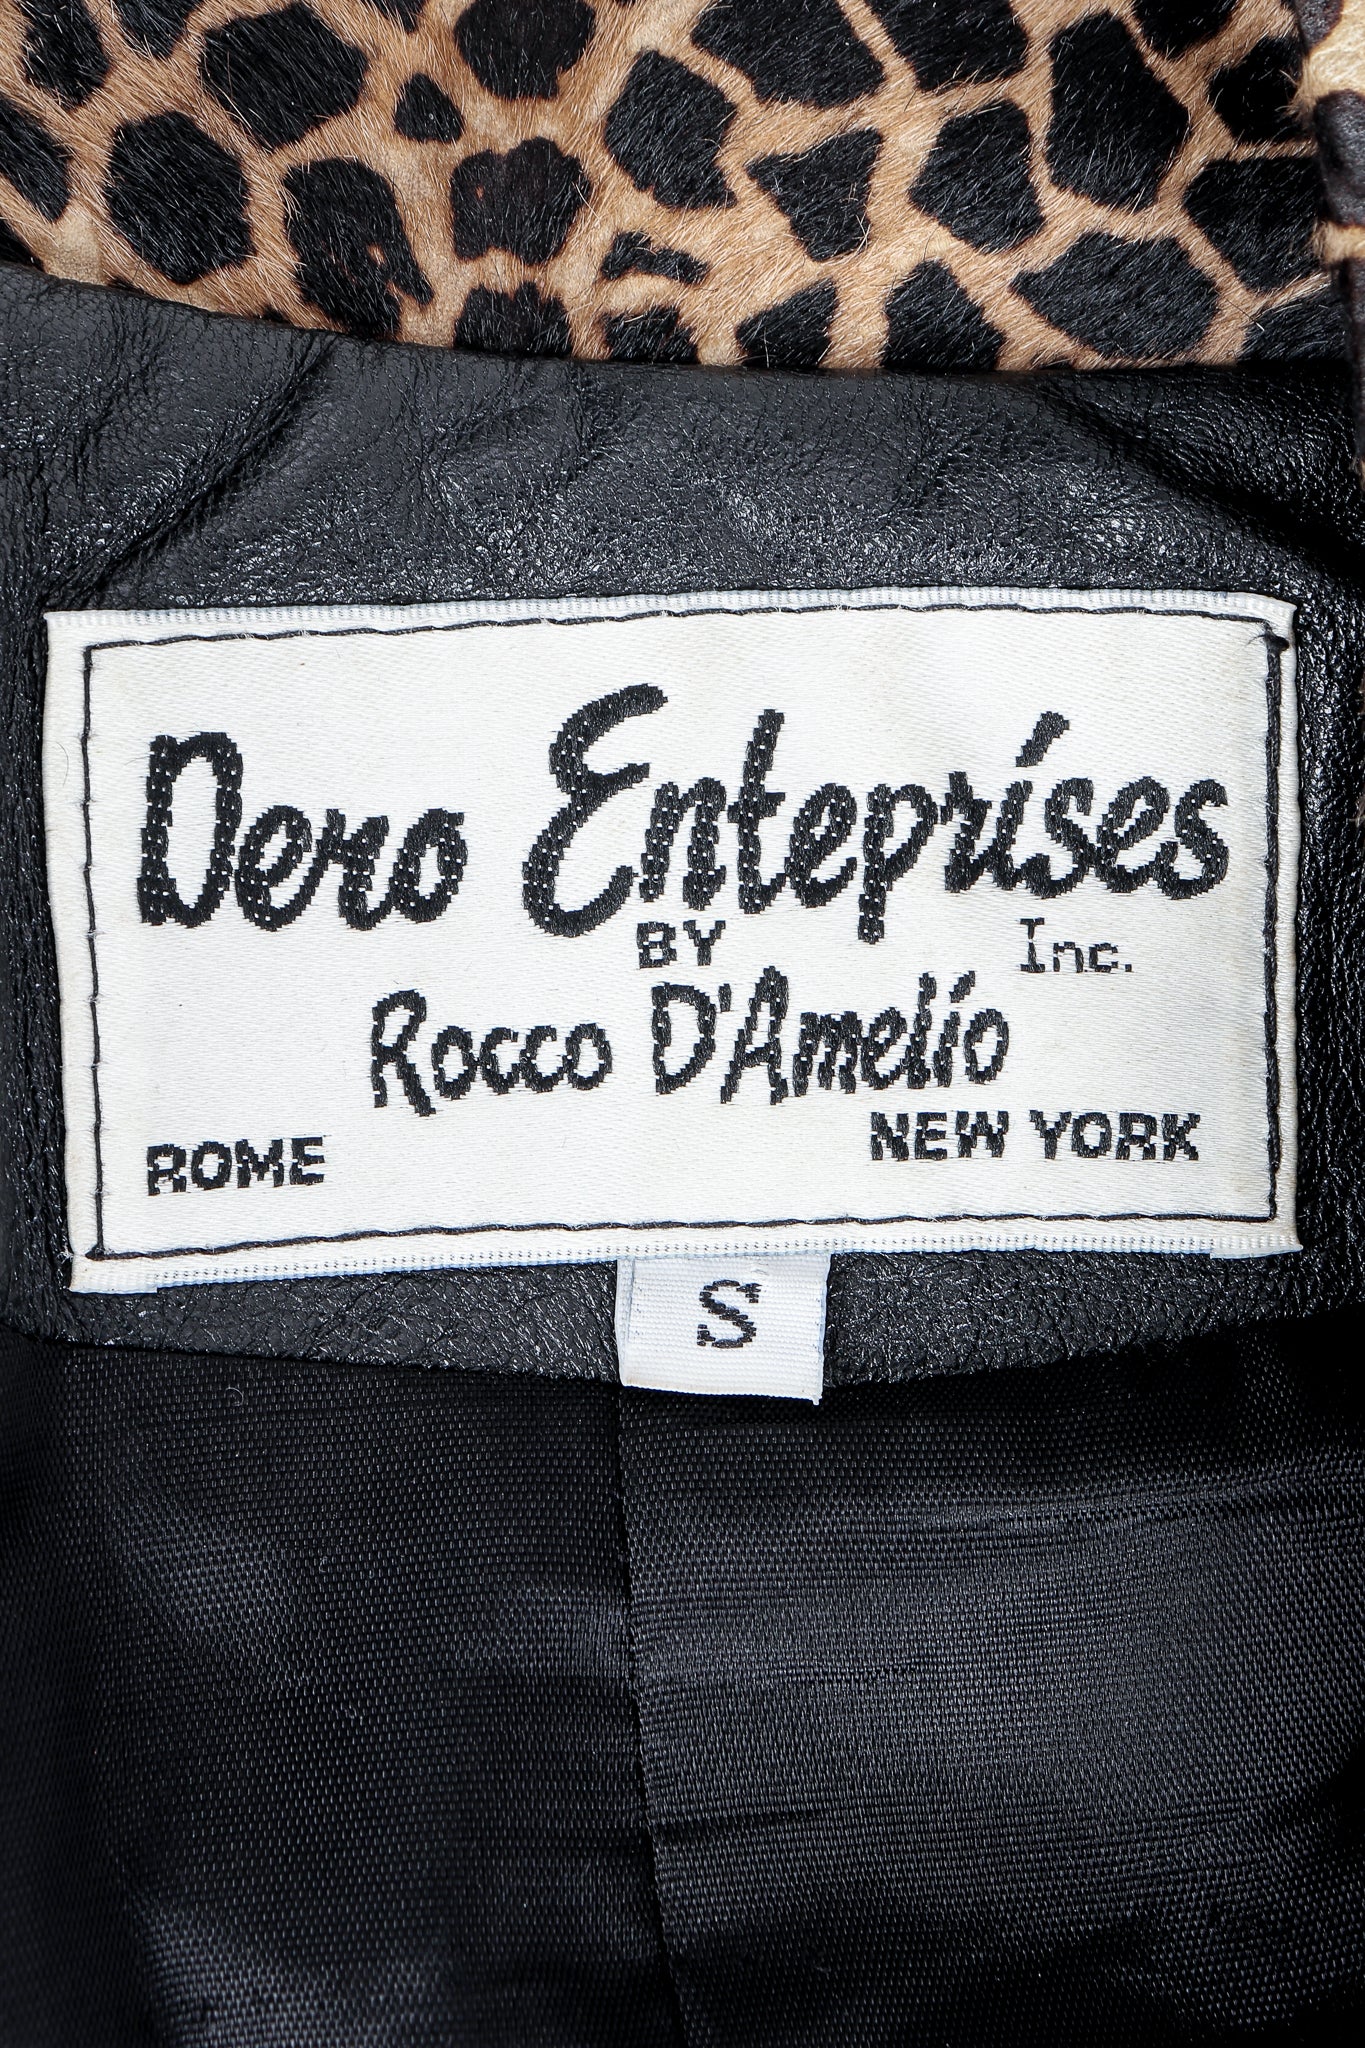 Vintage Dero Enterprises by Rocco D'Amelio Label on Black leather